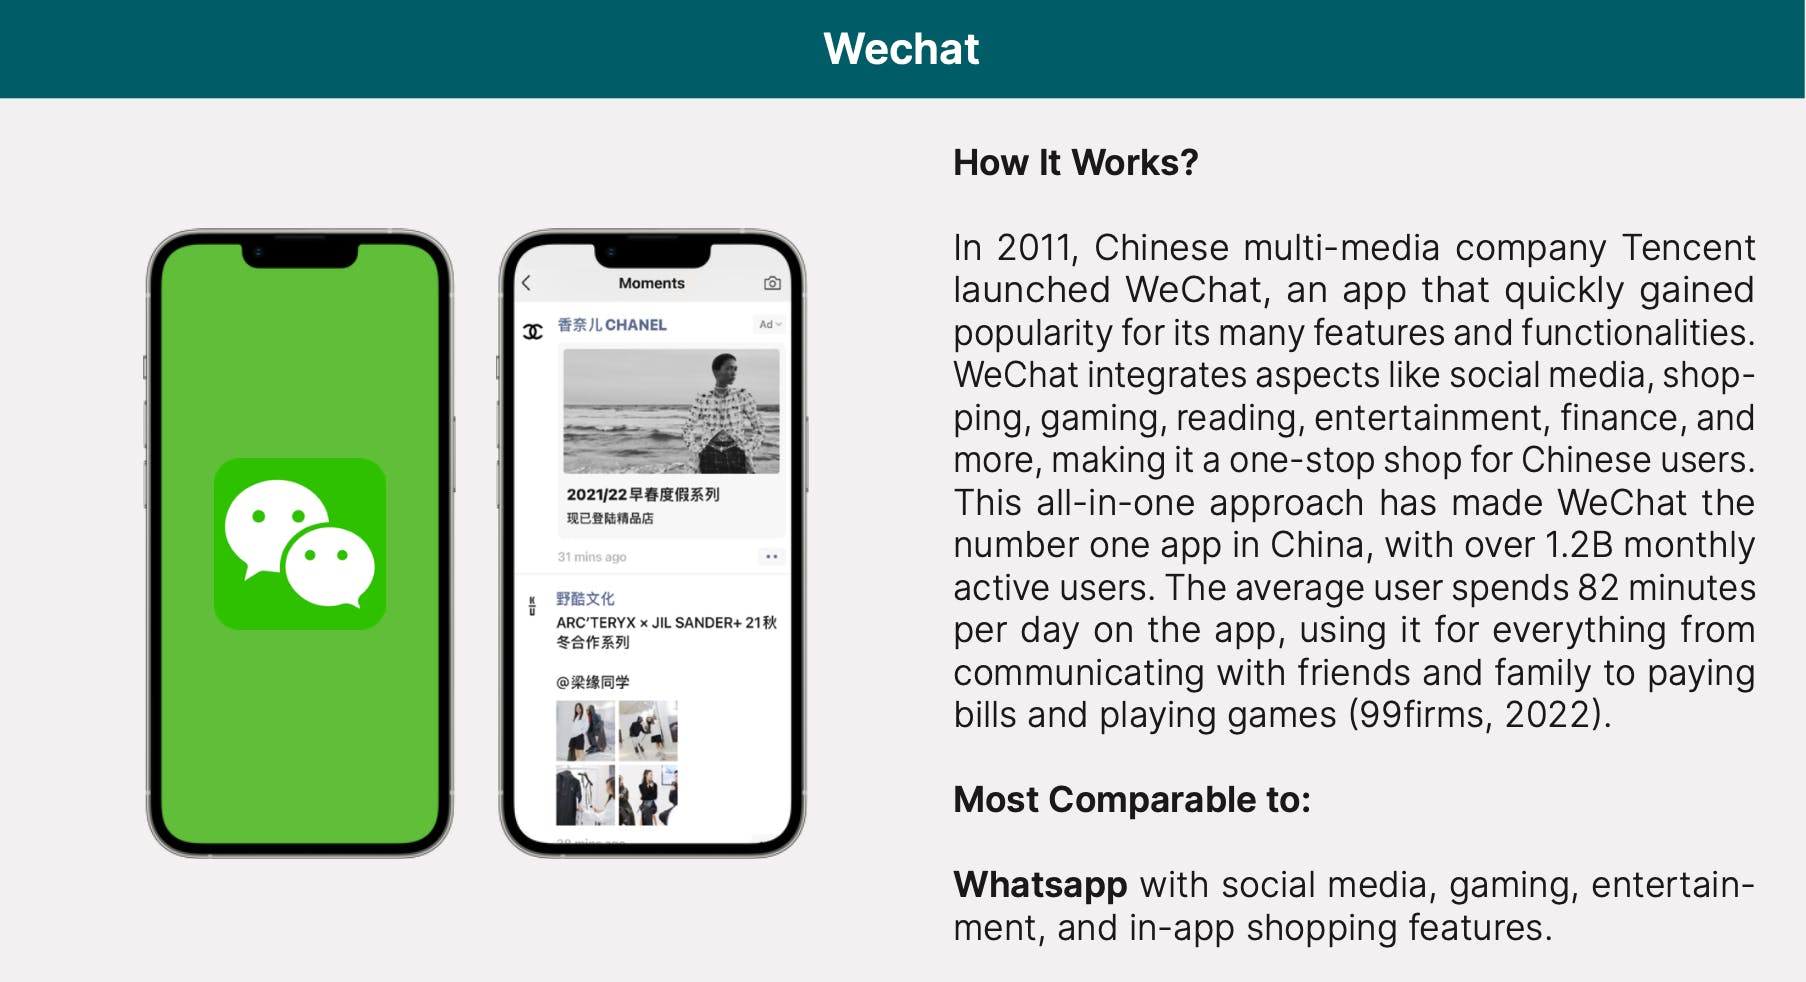 Description of Wechat